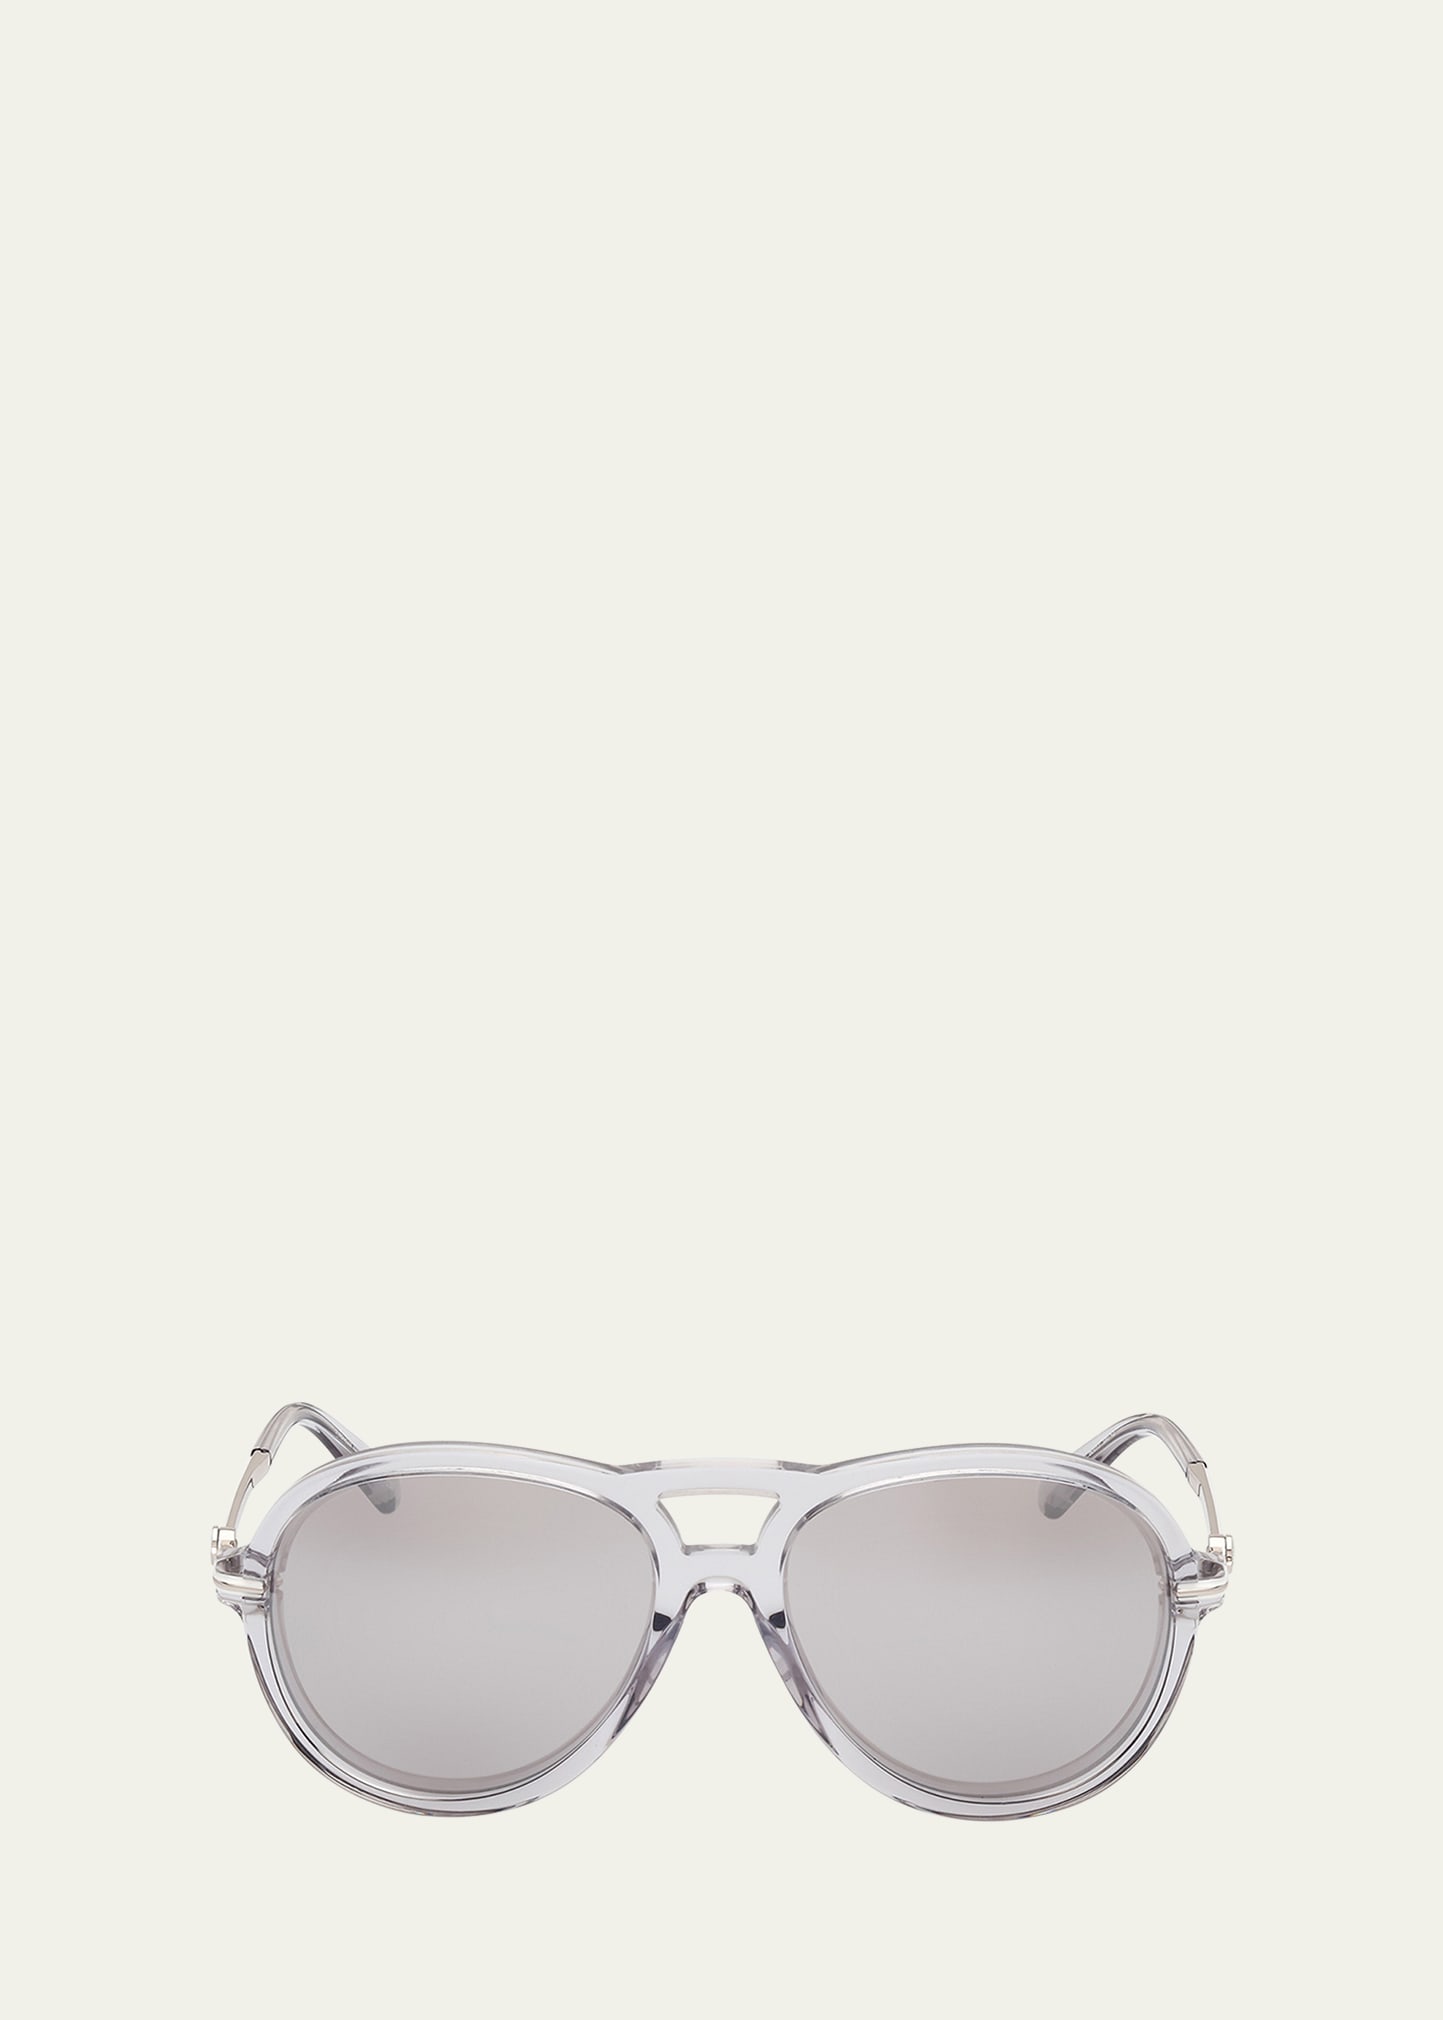 Moncler Men's Peake Acetate Round Sunglasses In Grey Smoke Mirror